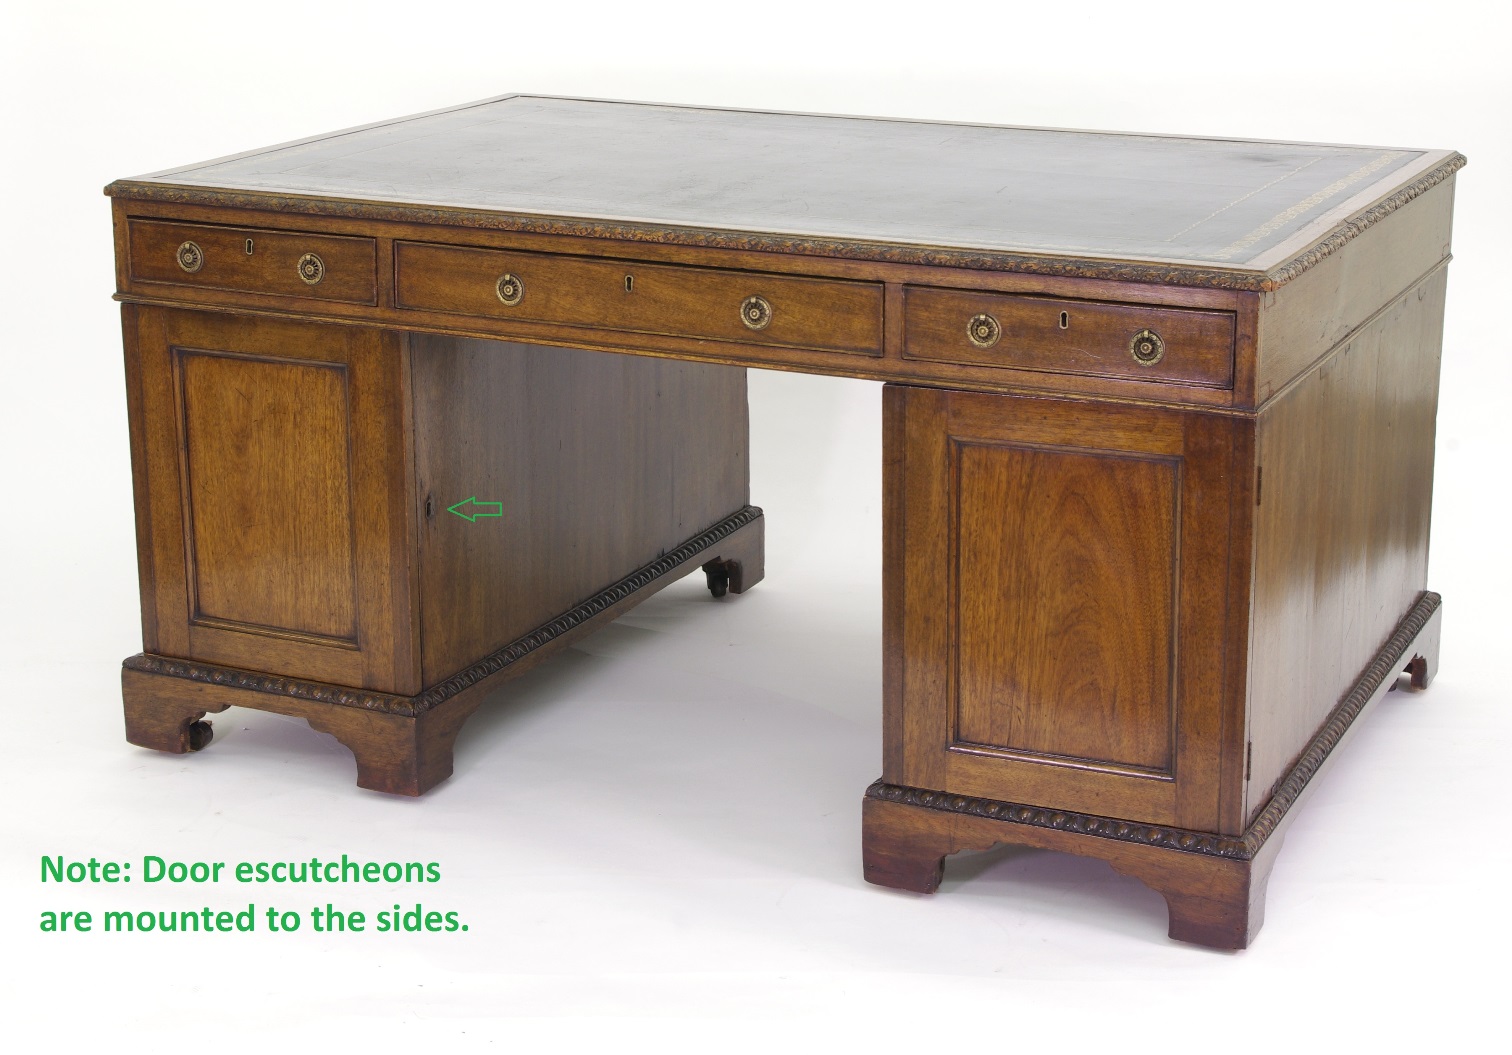 Victorian Mahogany Partners Desk, c. 1840-60